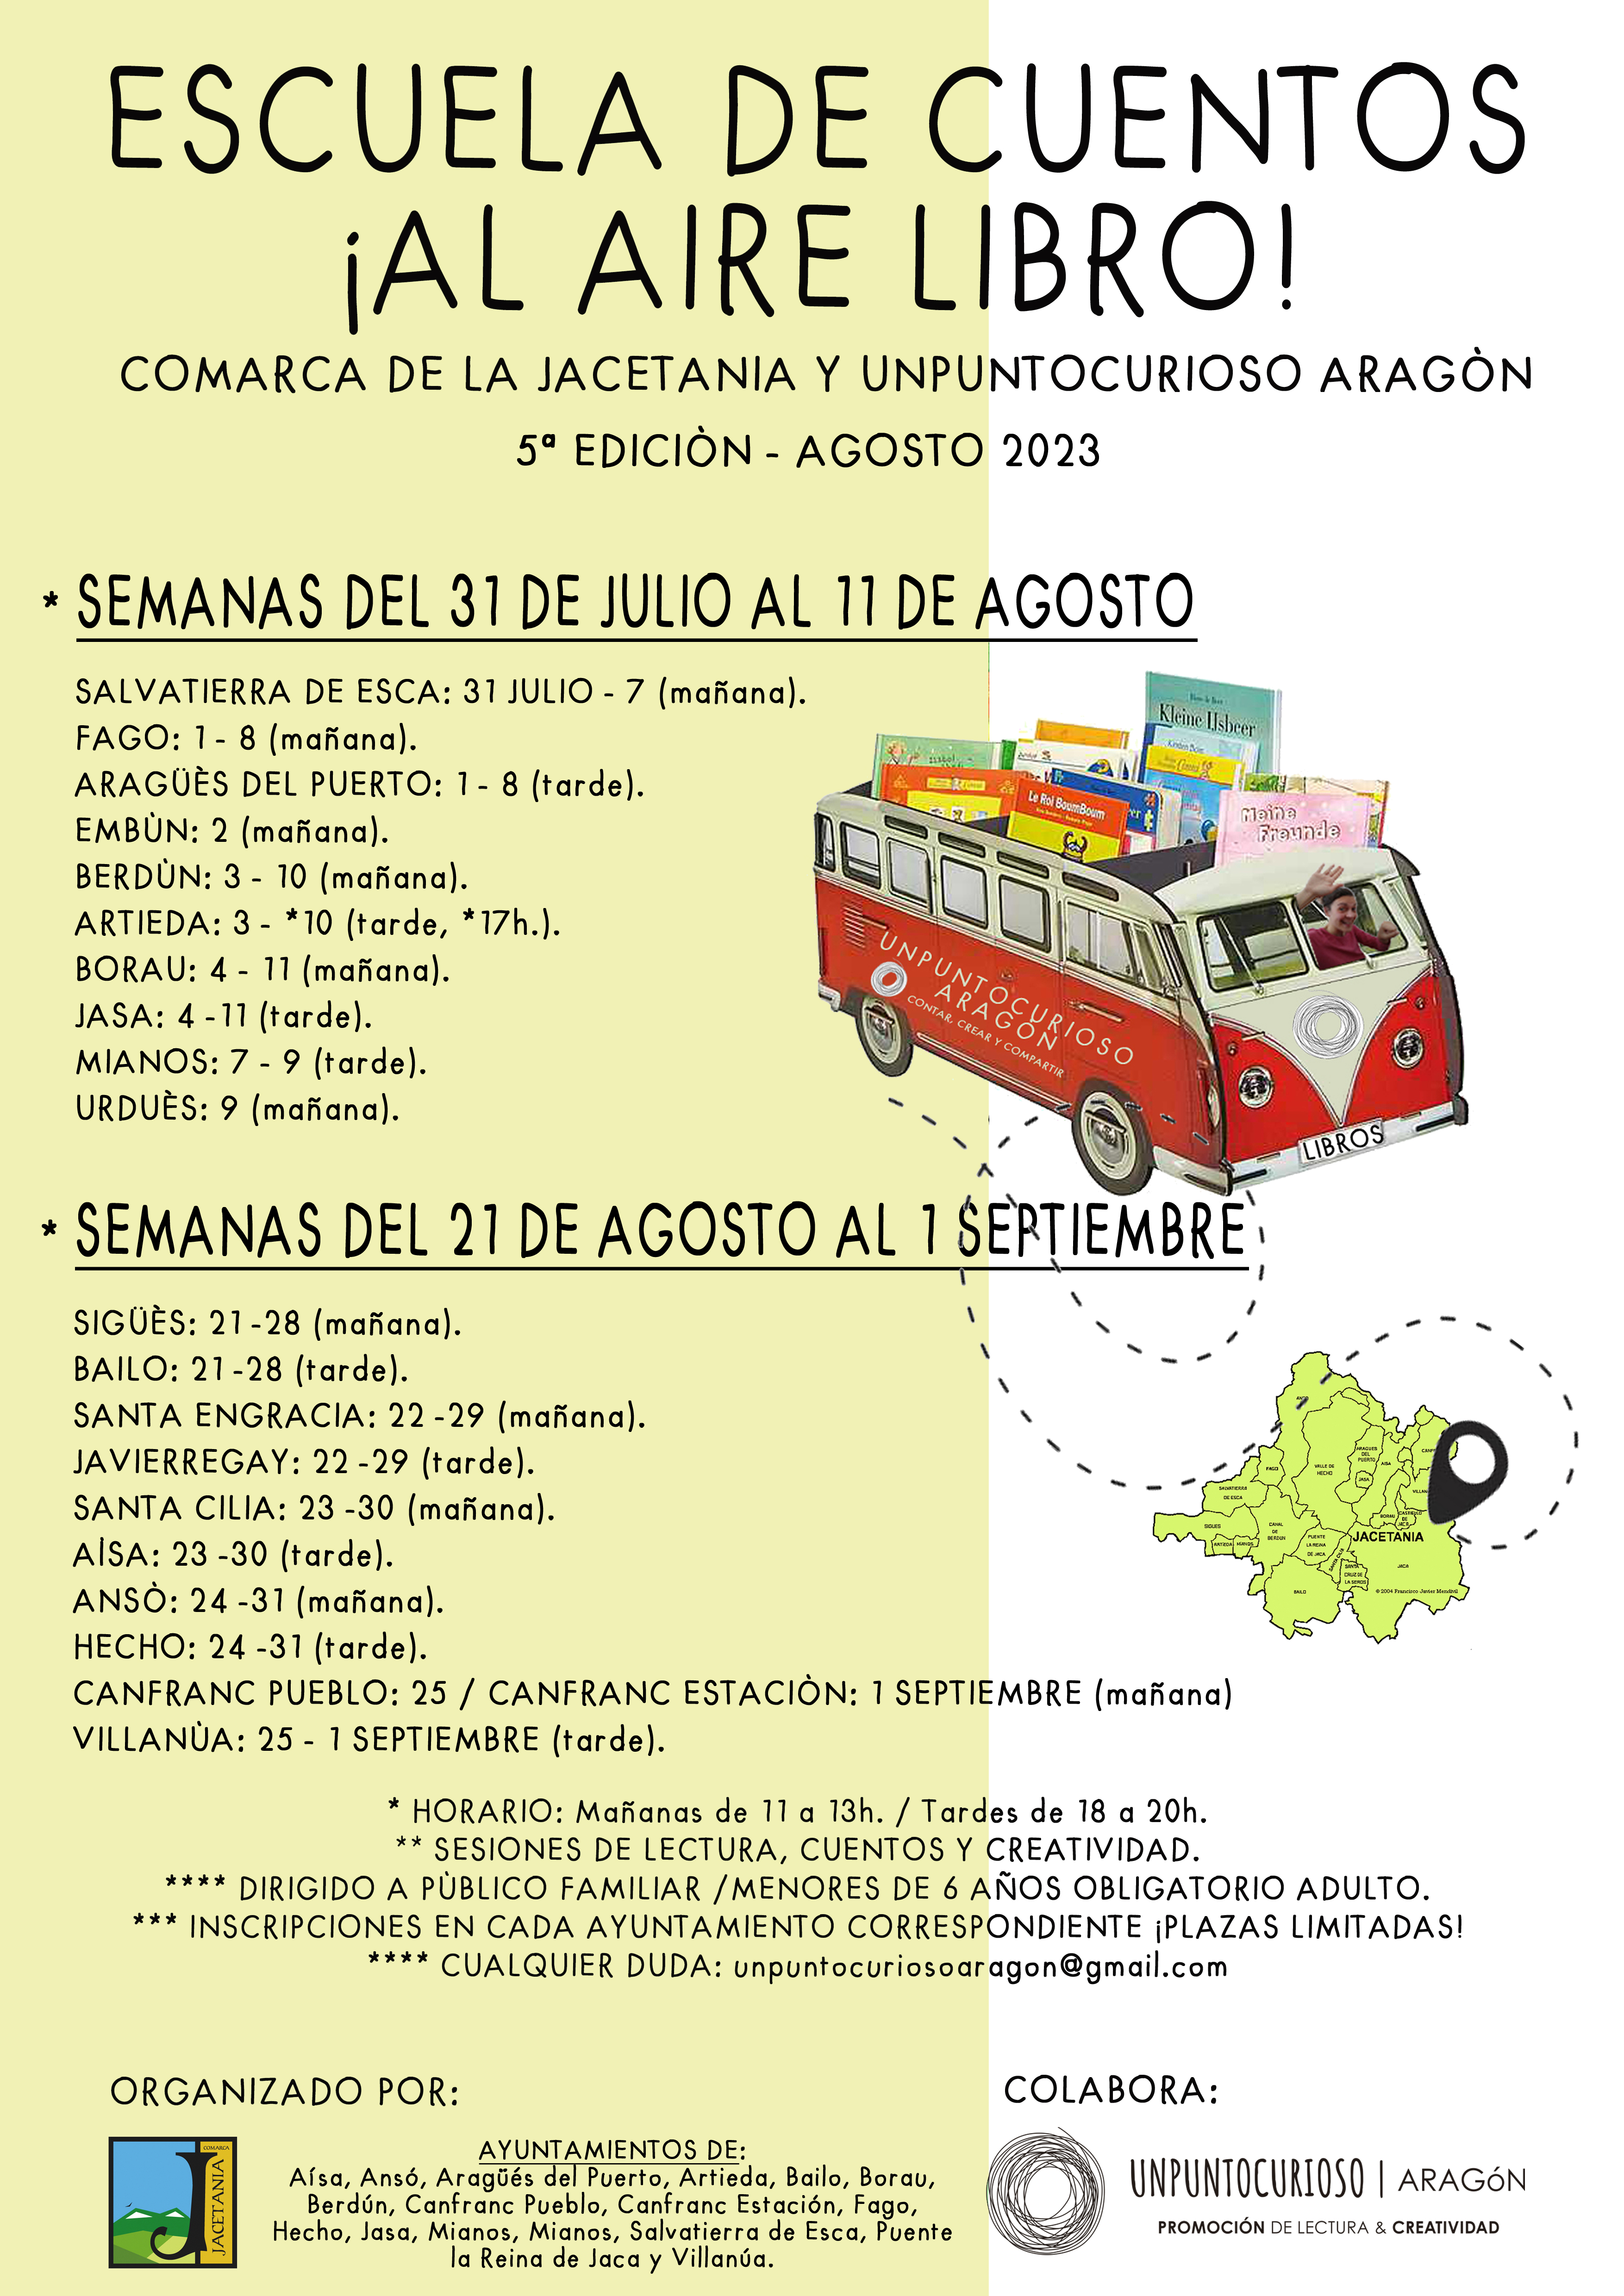 La V Escuela de Cuentos Al aire libro! llegar este verano a 21 pueblos de La Jacetania